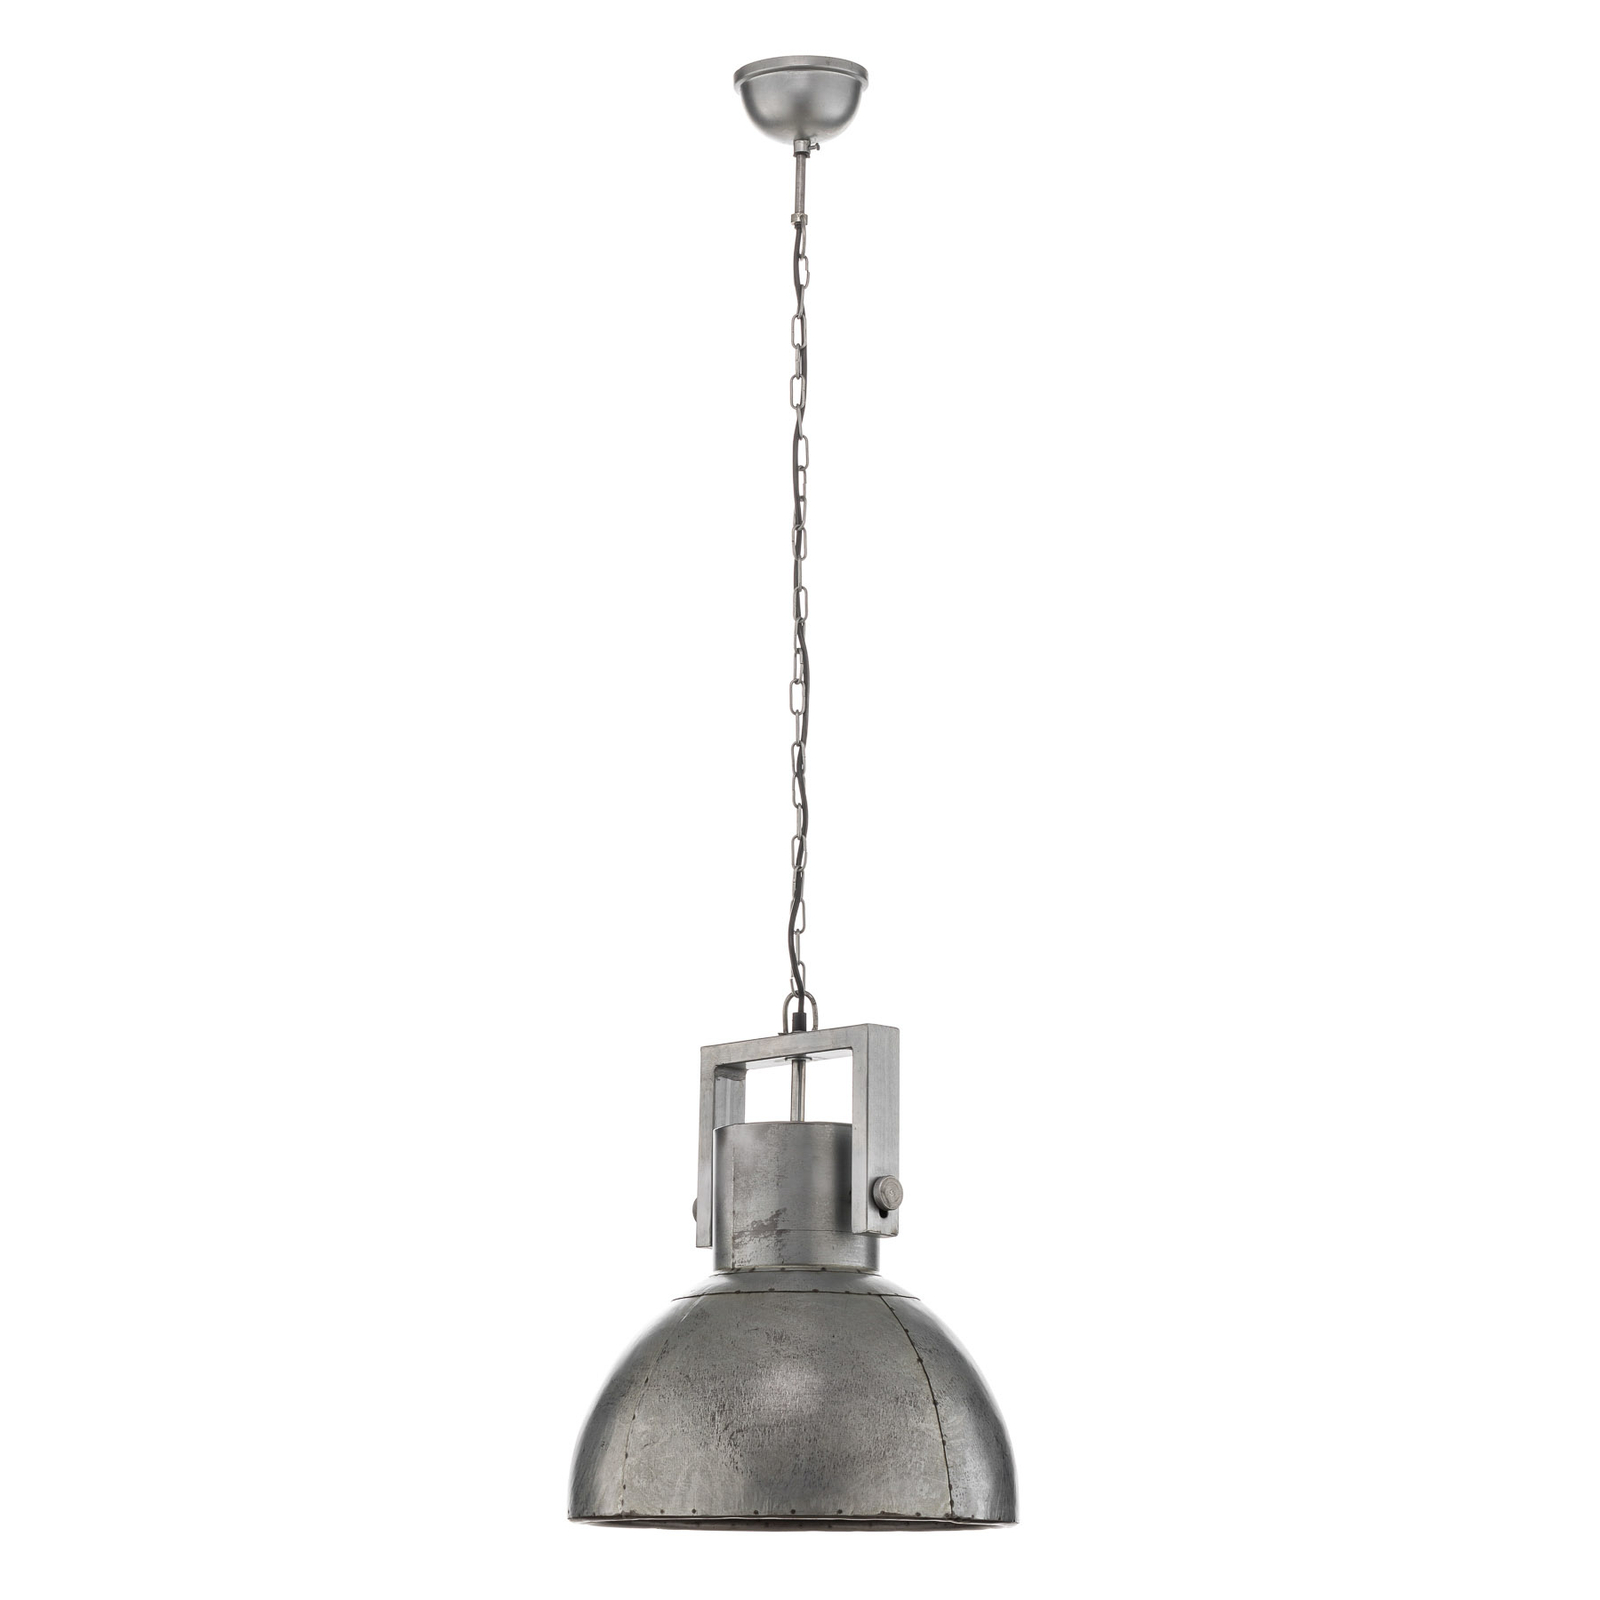 Gabriel hængelampe i industridesign, Ø 40 cm